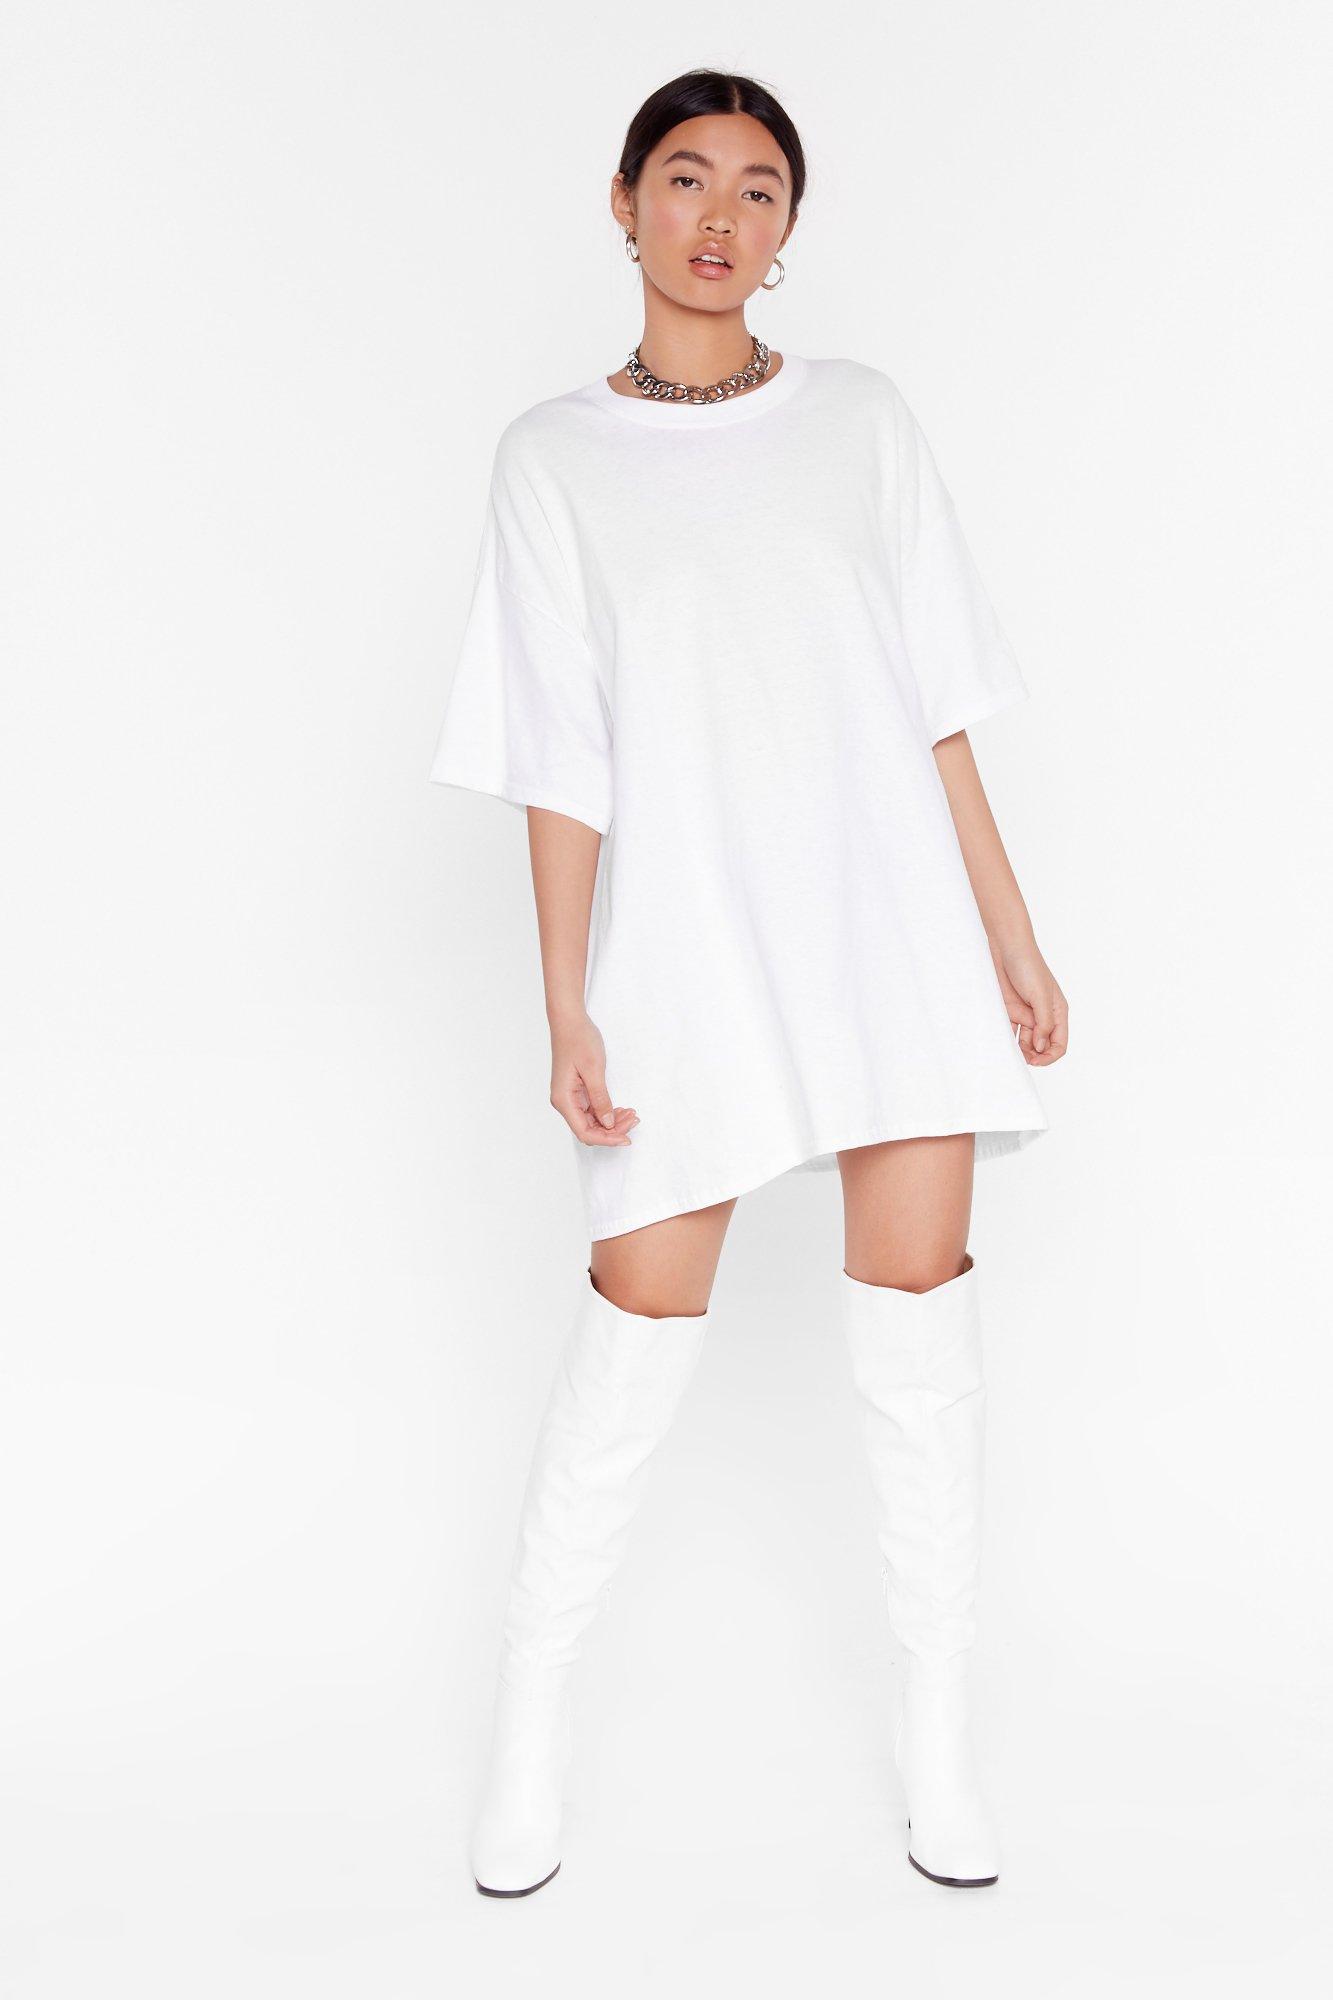 tee dress white